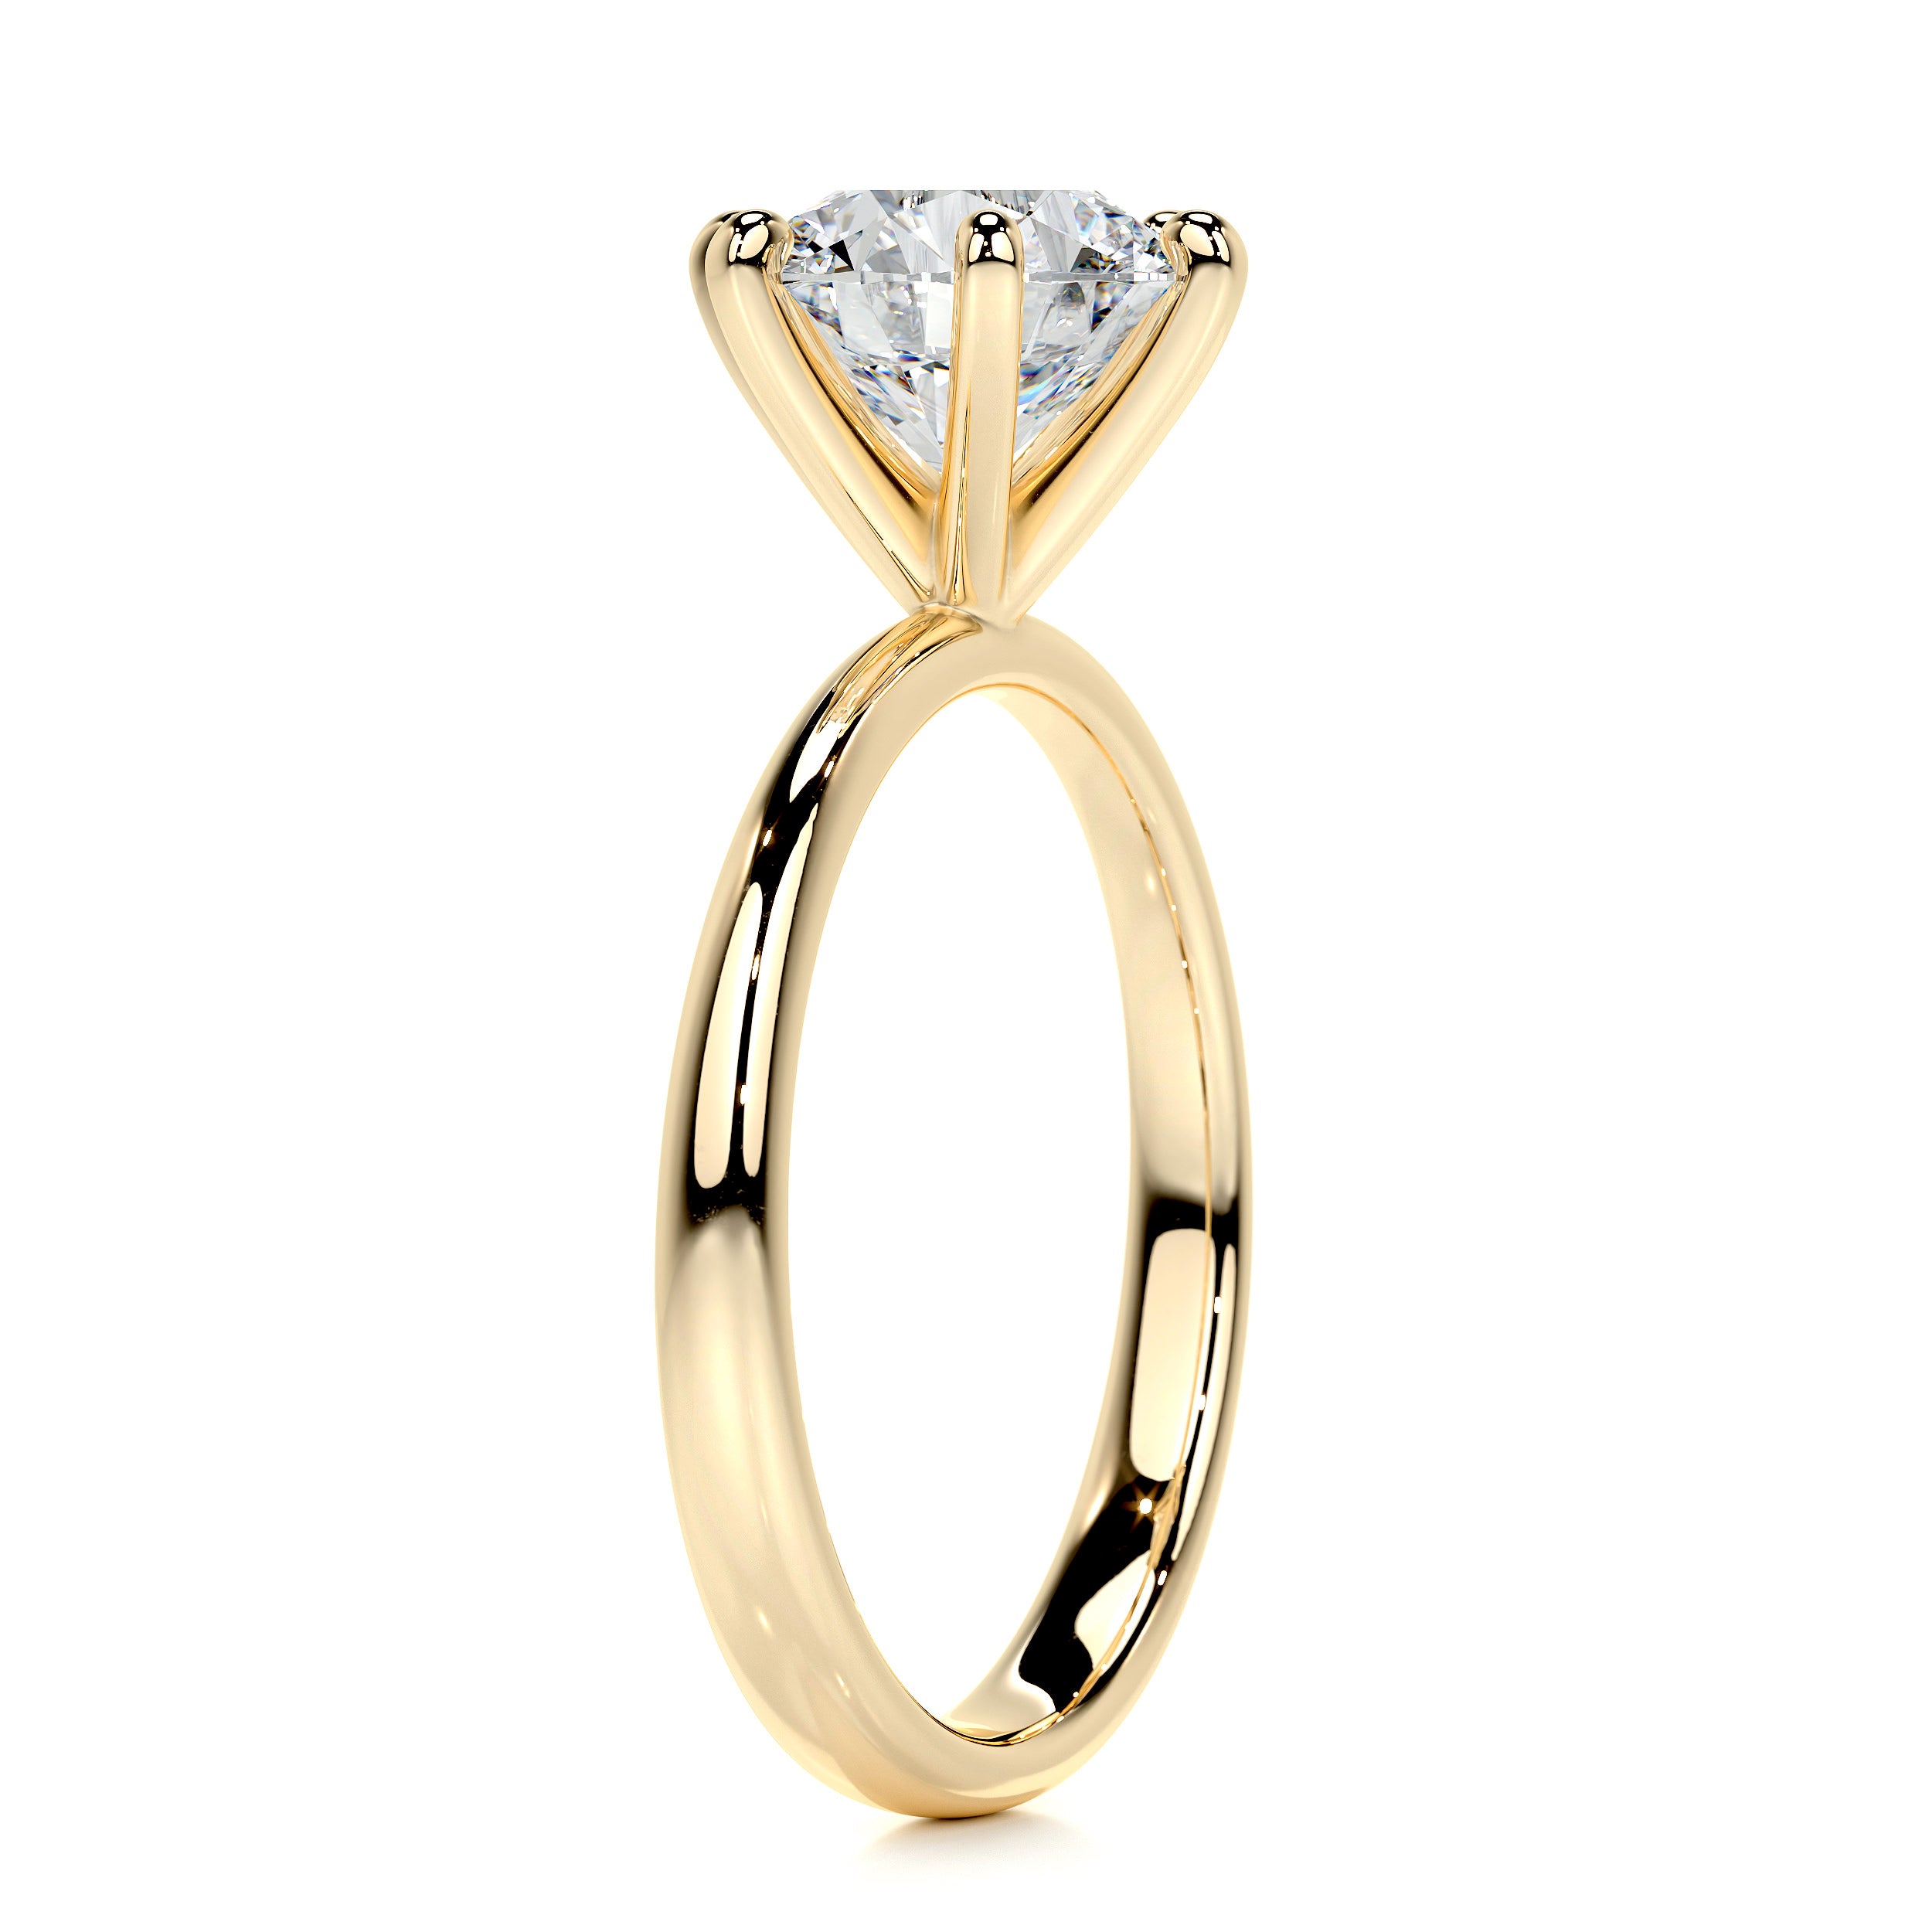 Samantha Diamond Engagement Ring   (2 Carat) -18K Yellow Gold